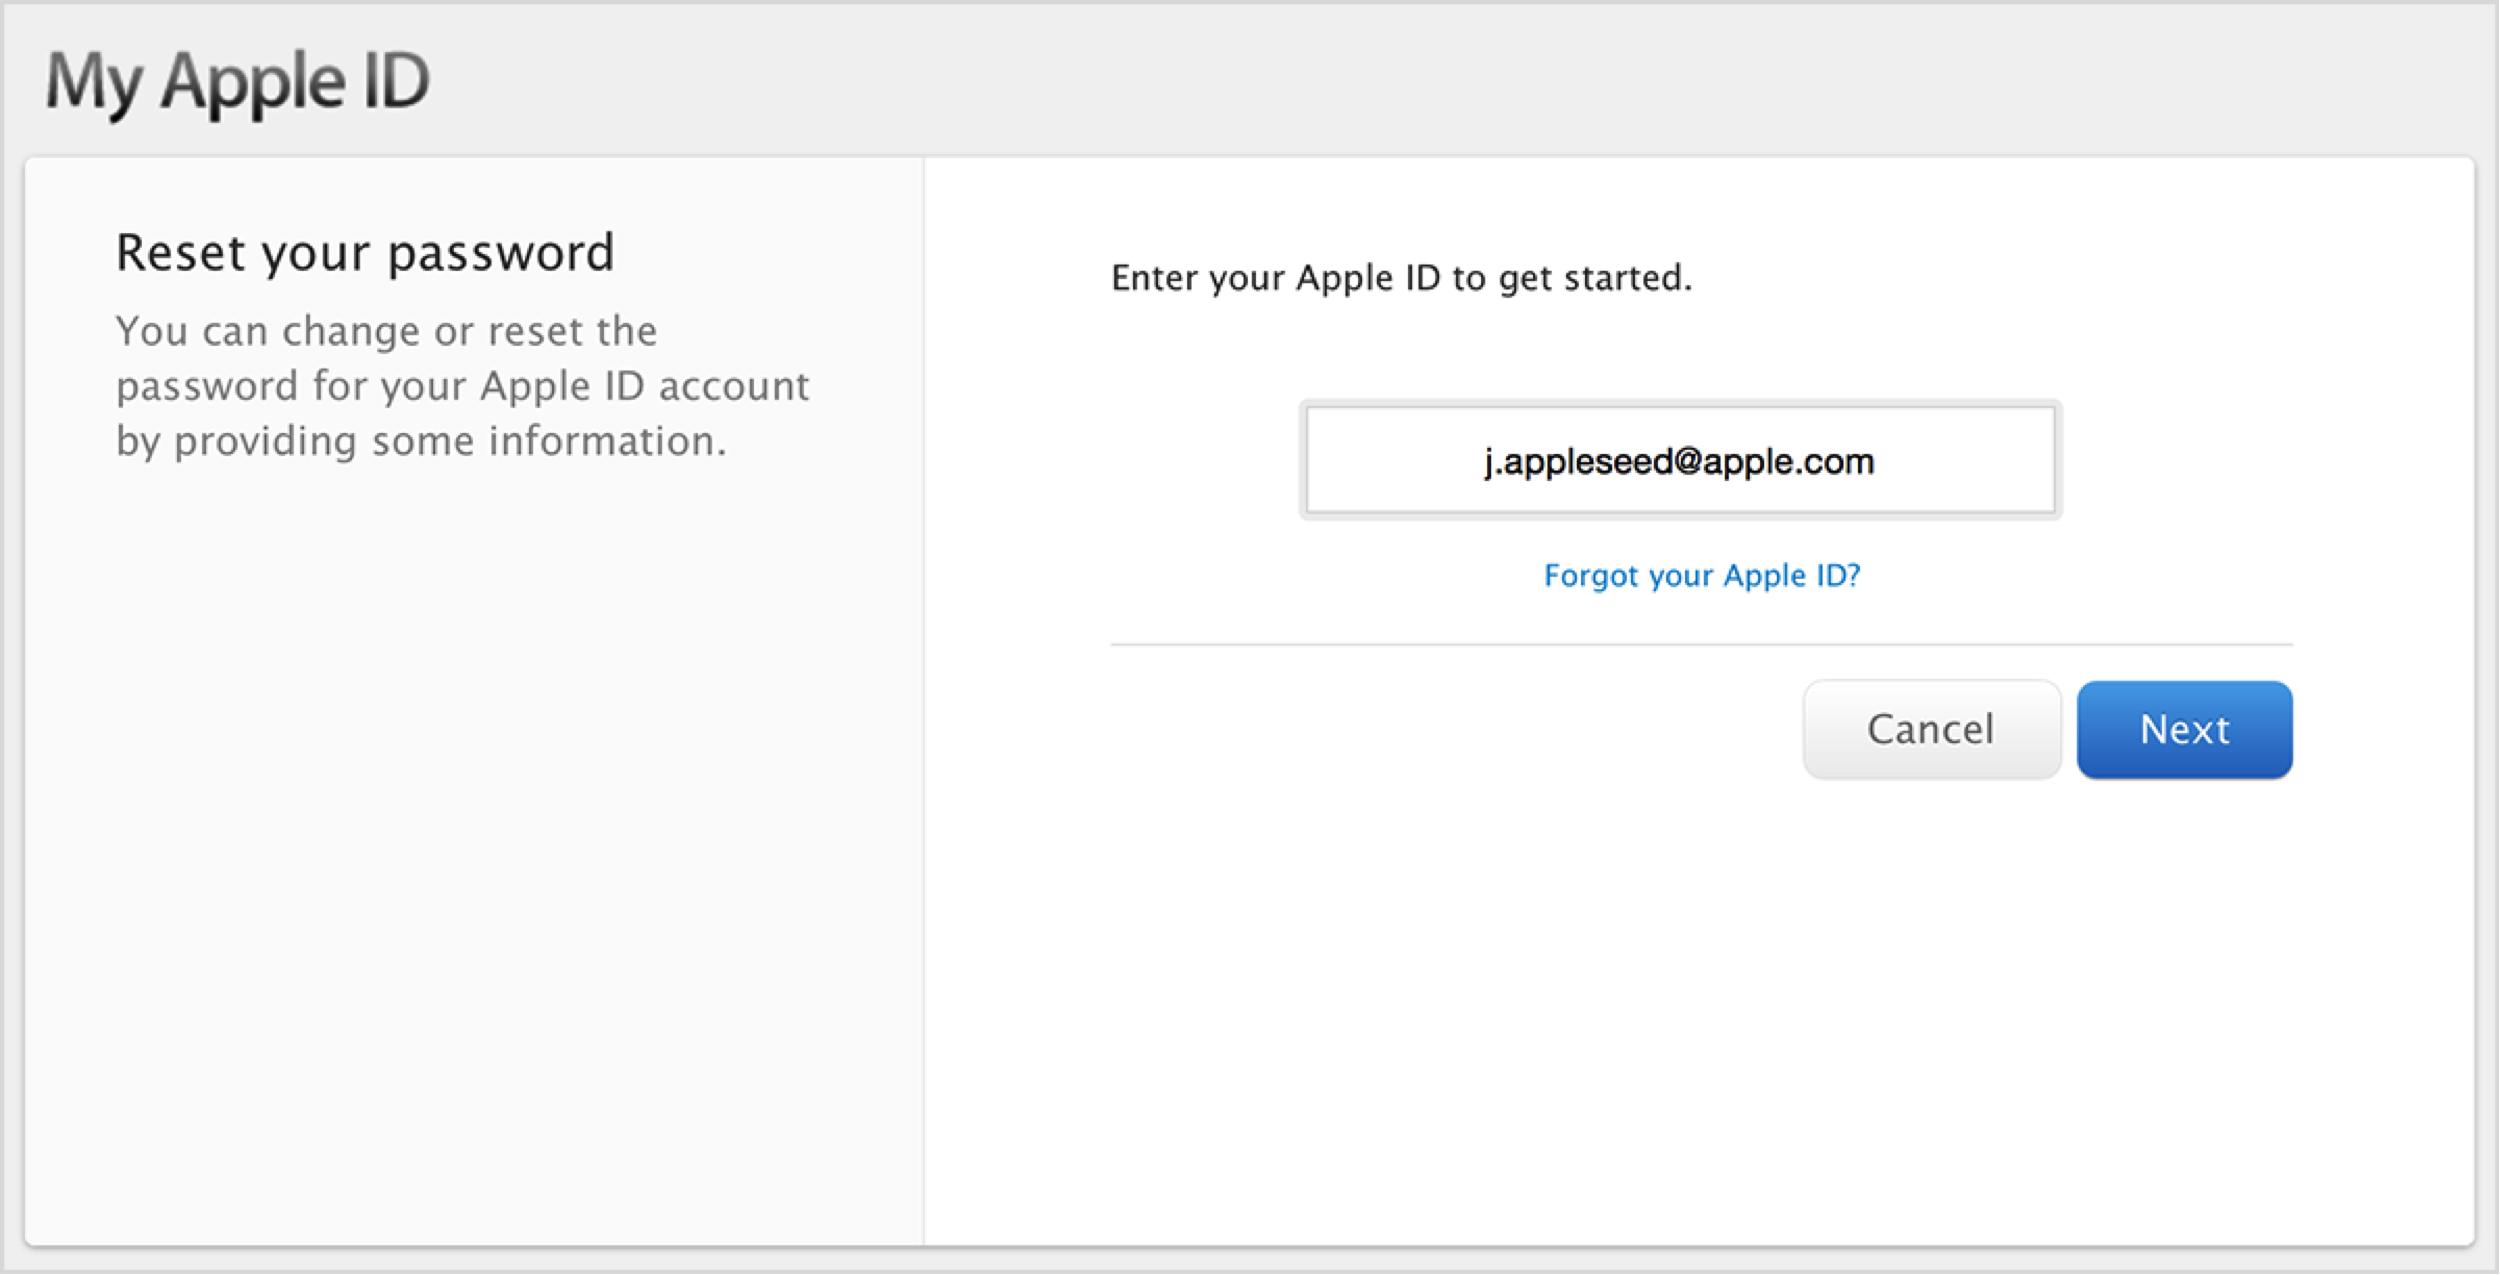 Авторизация apple. Пароль для Аппле ИД. Идентификатор Apple ID что это. Пароль для АПЛ ID. Что такое Эппл ID И пароль.